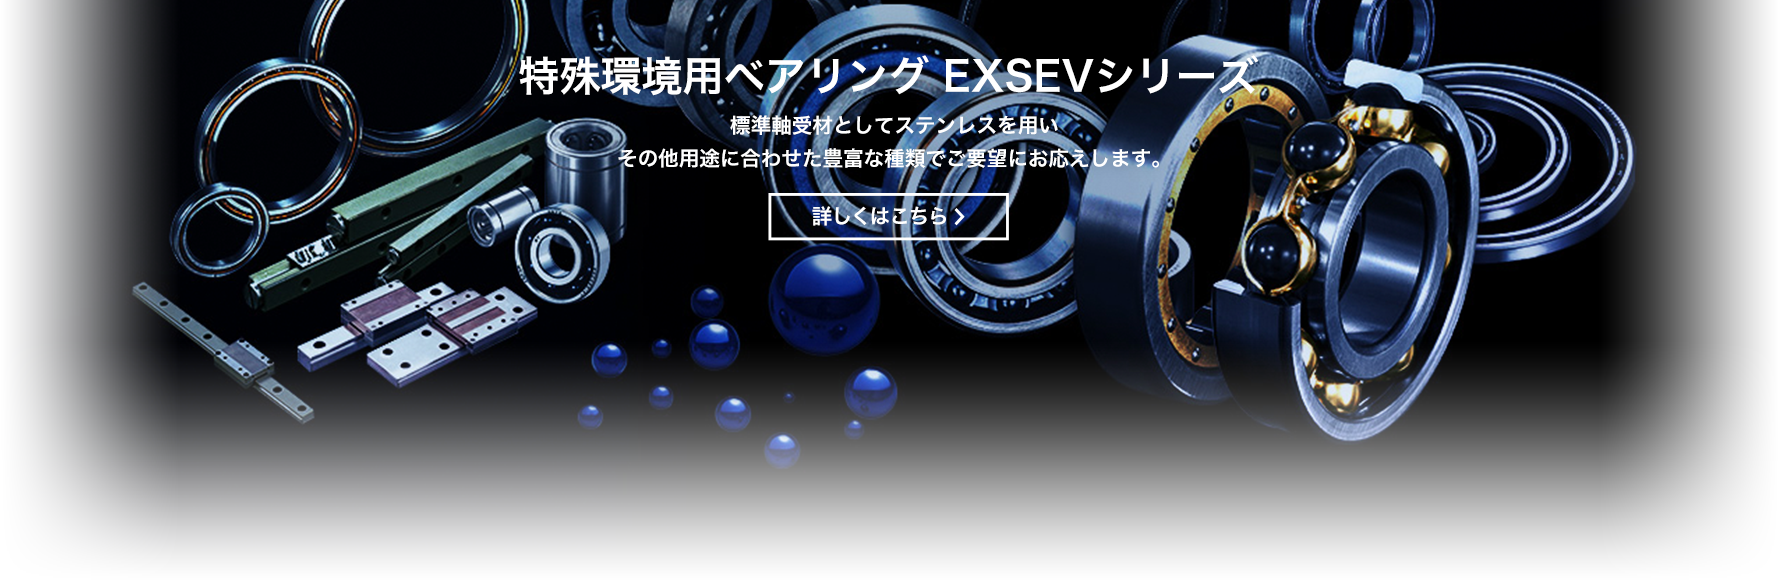 36652円 【メーカー公式ショップ】 ジェイテクト KOYO ベアリング 円筒ころ軸受 NU328C3